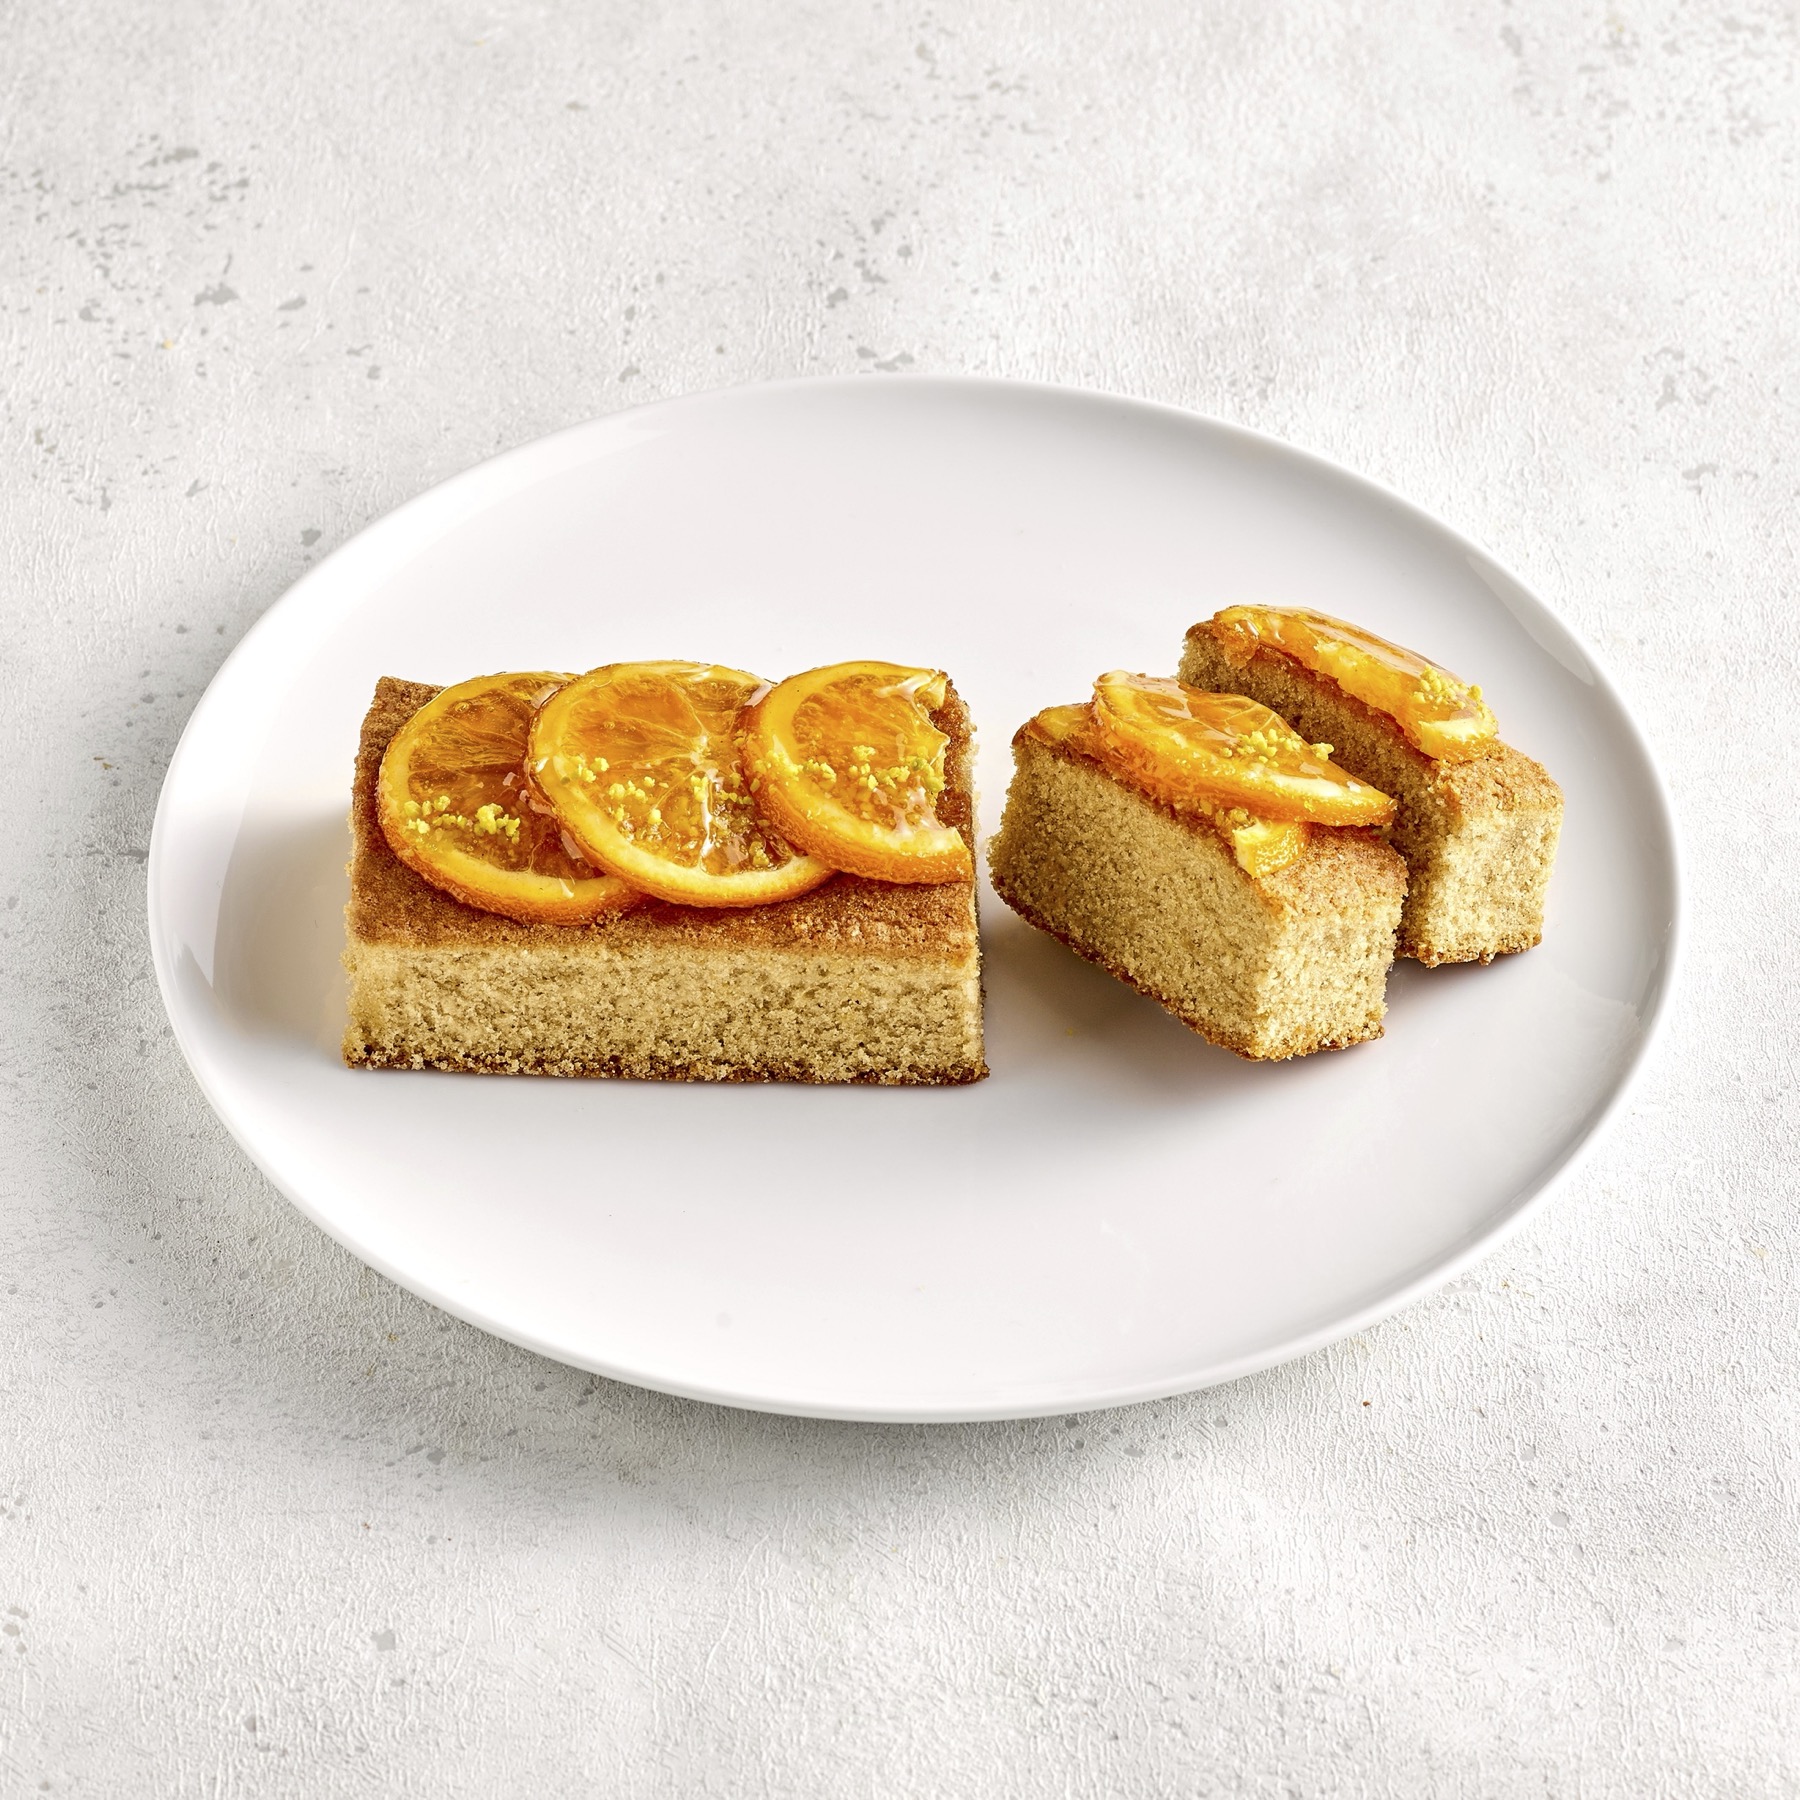 【276】英国風アールグレイとオレンジのパウンドケーキ